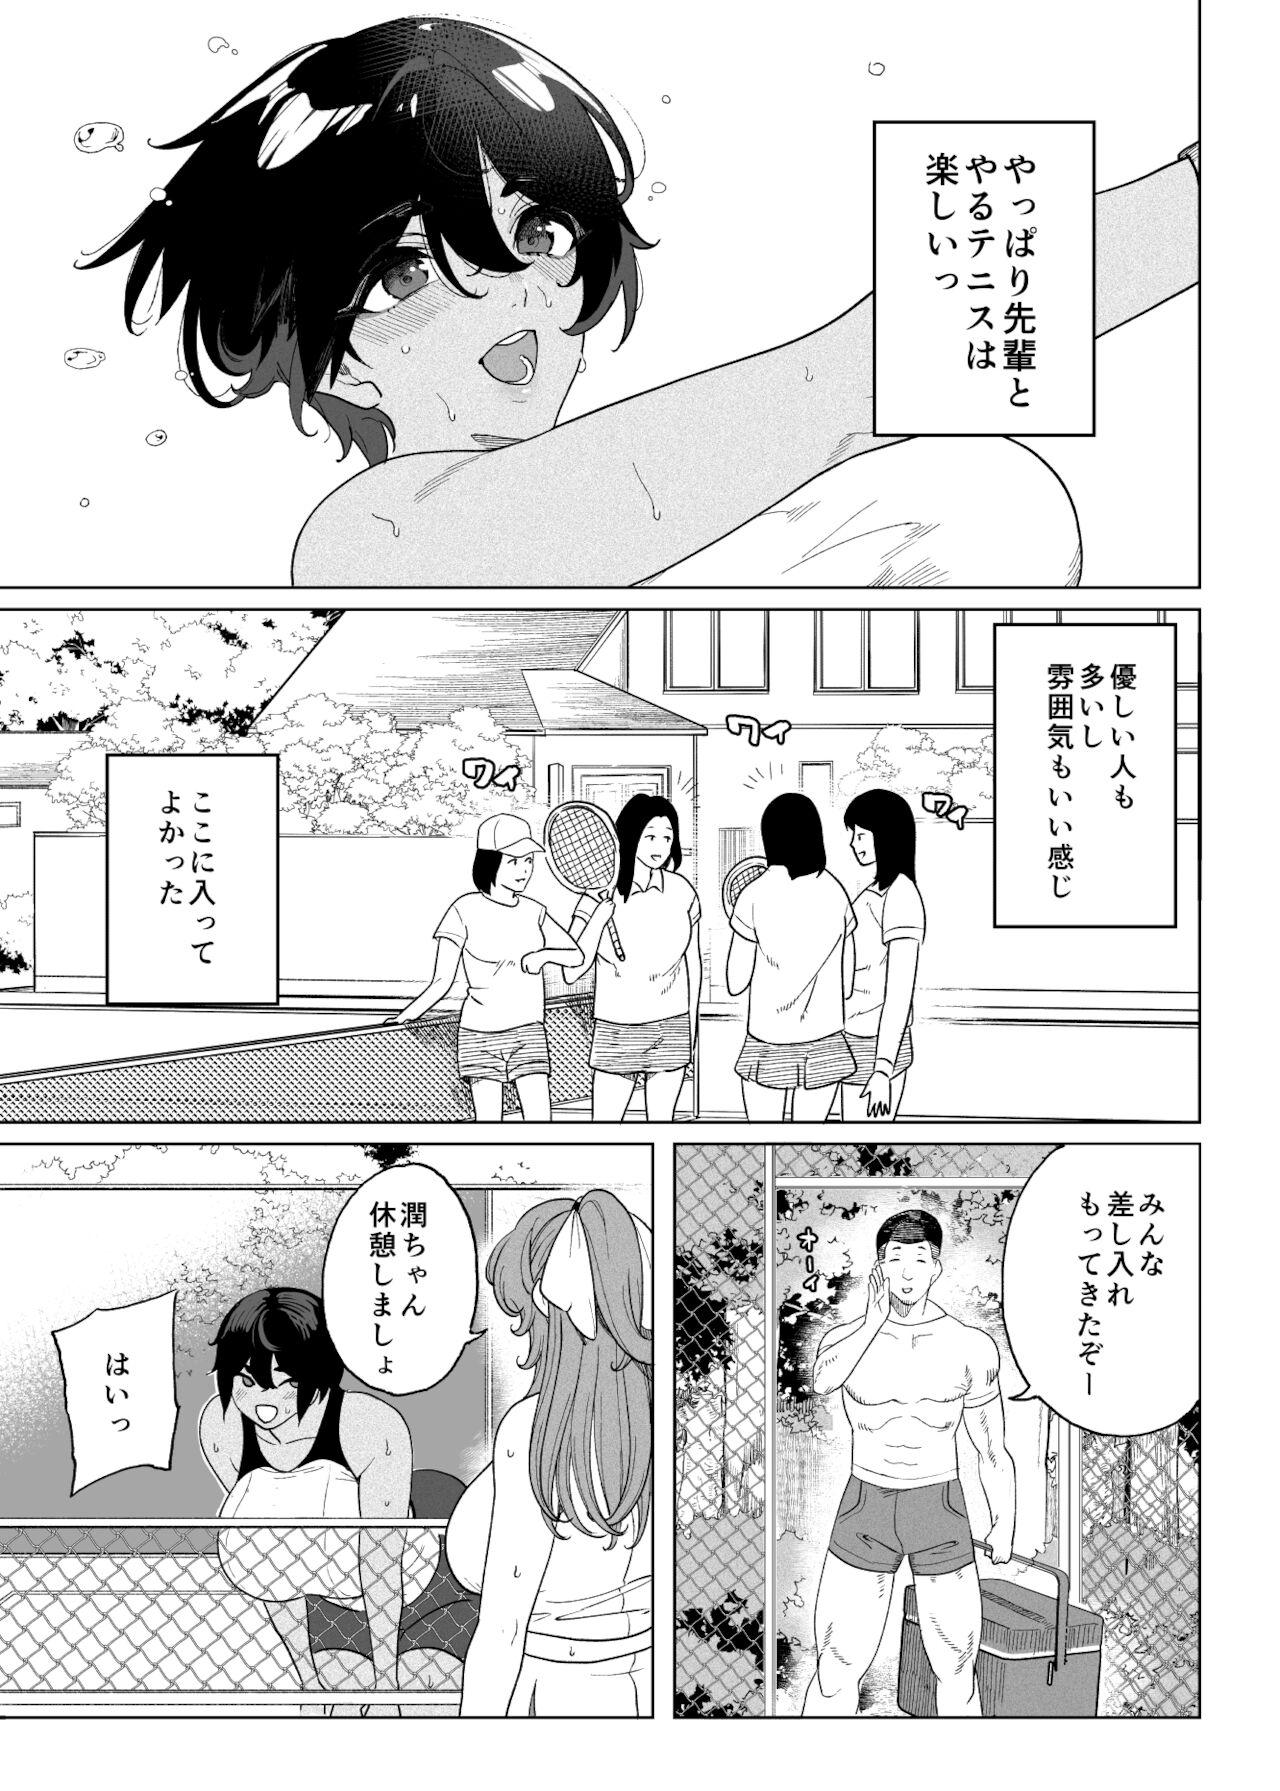 TenniCir Manga Zenpen + Chuuhen + Owari 6